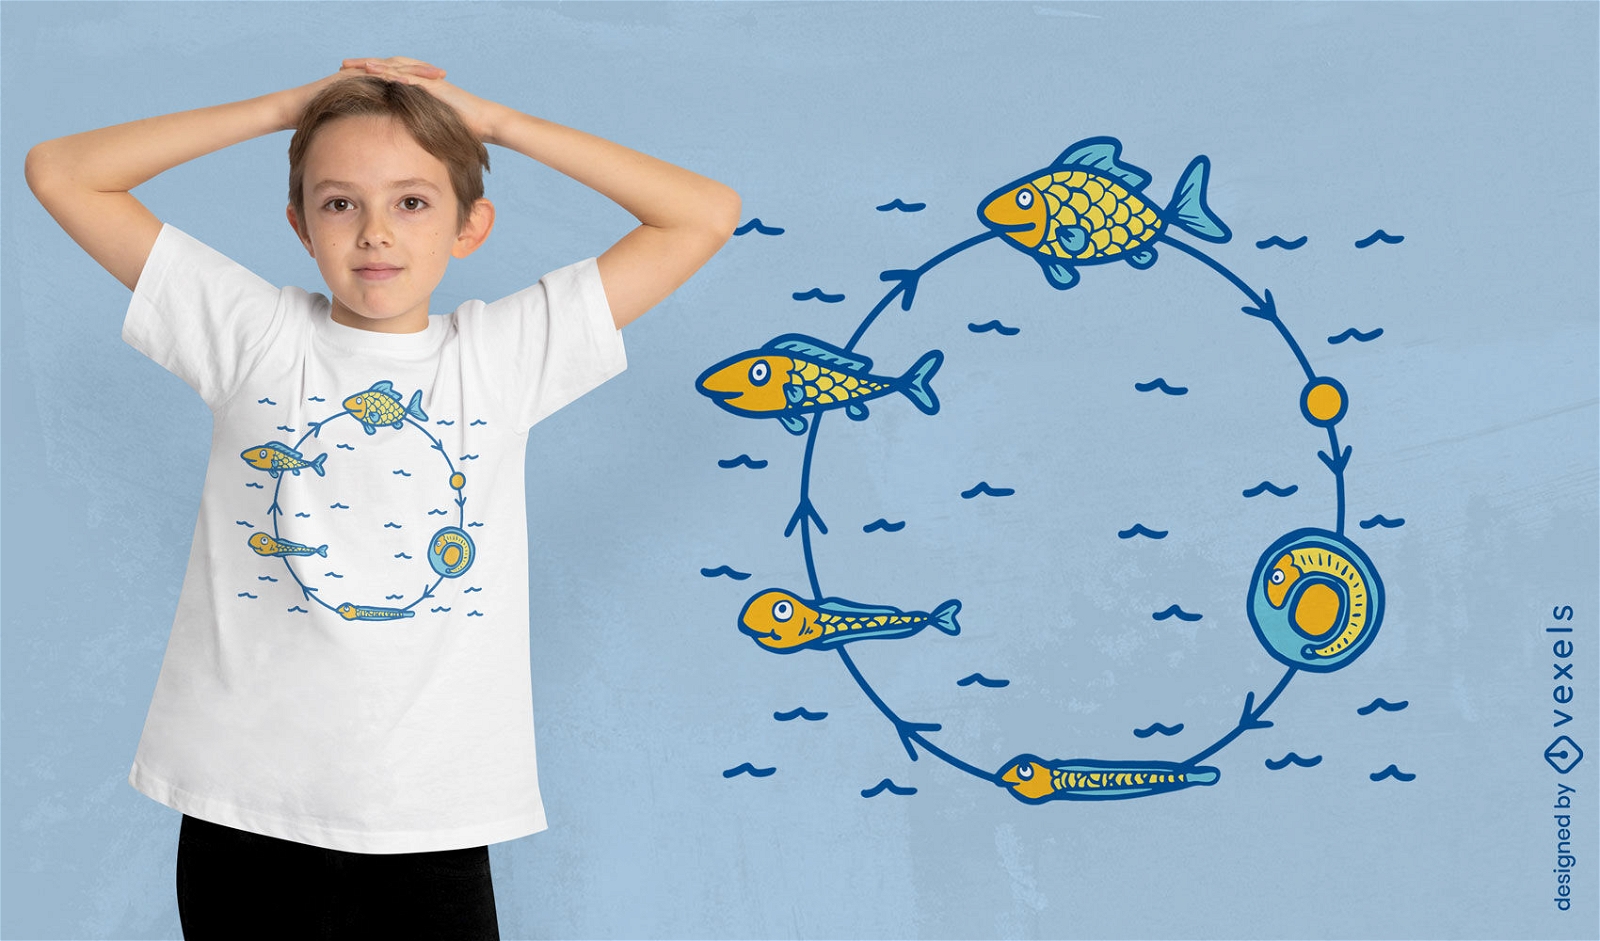 Dise?o de camiseta del ciclo de vida de los peces.